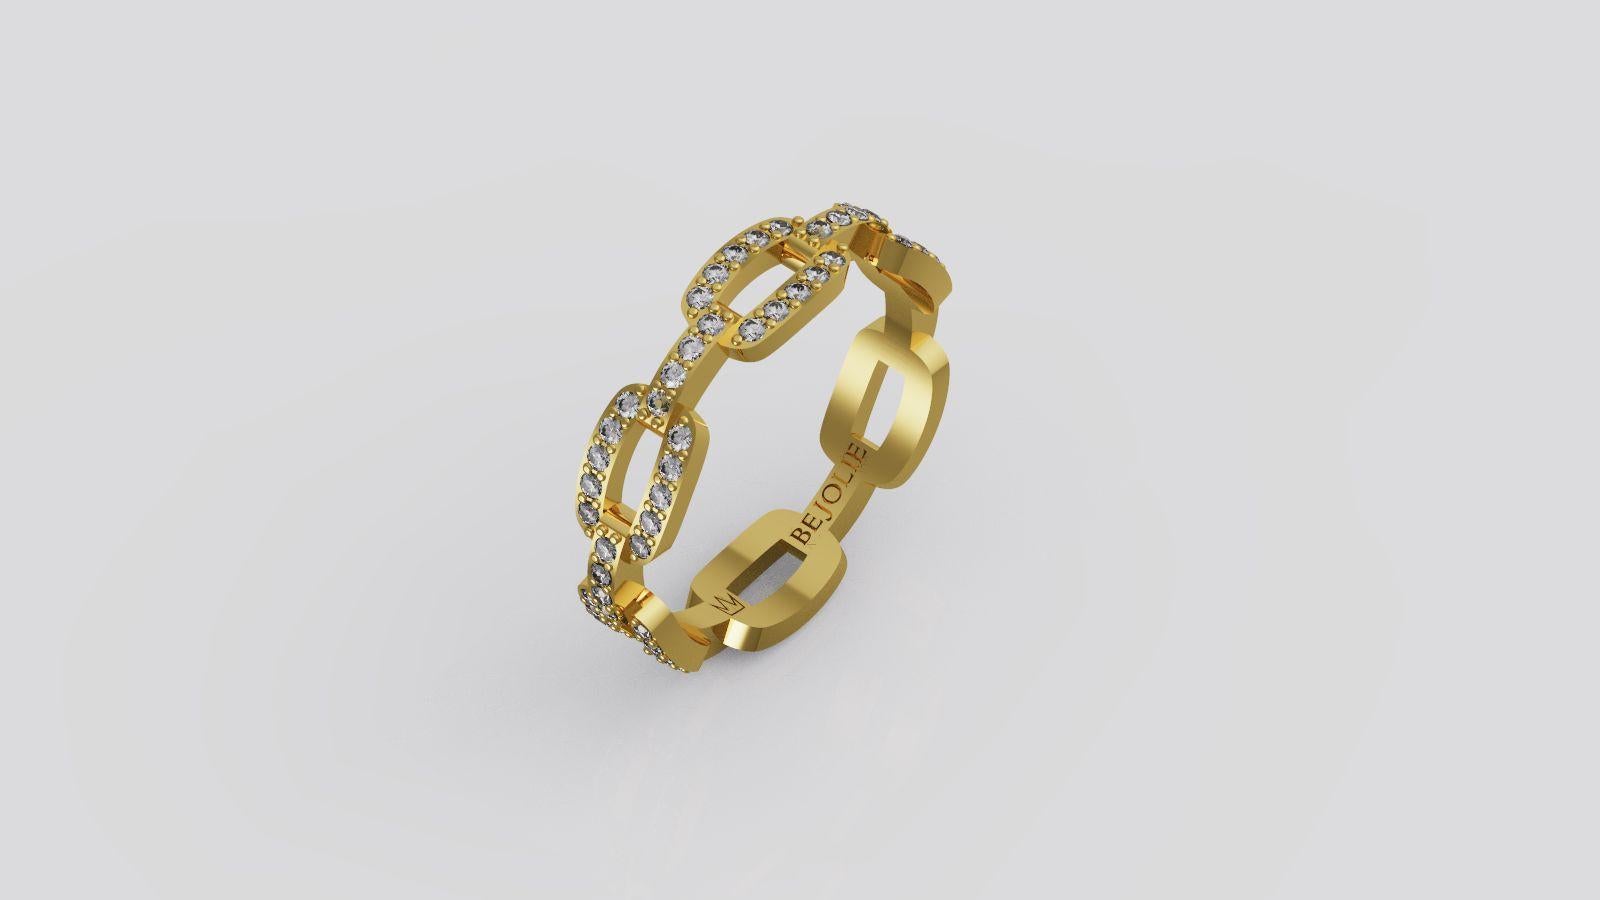 0.60 Band Ring Sterne 84 Round Cut Diamanten E-F /SI und auf 18K Gelbgold gesetzt. 
Jeder Diamant hat einen Durchmesser von etwa 1 mm. 
Ringgröße ist 6.5 und kann in der Größe geändert werden
Der Ring ist 4,53 mm breit. 

*Unser schöner